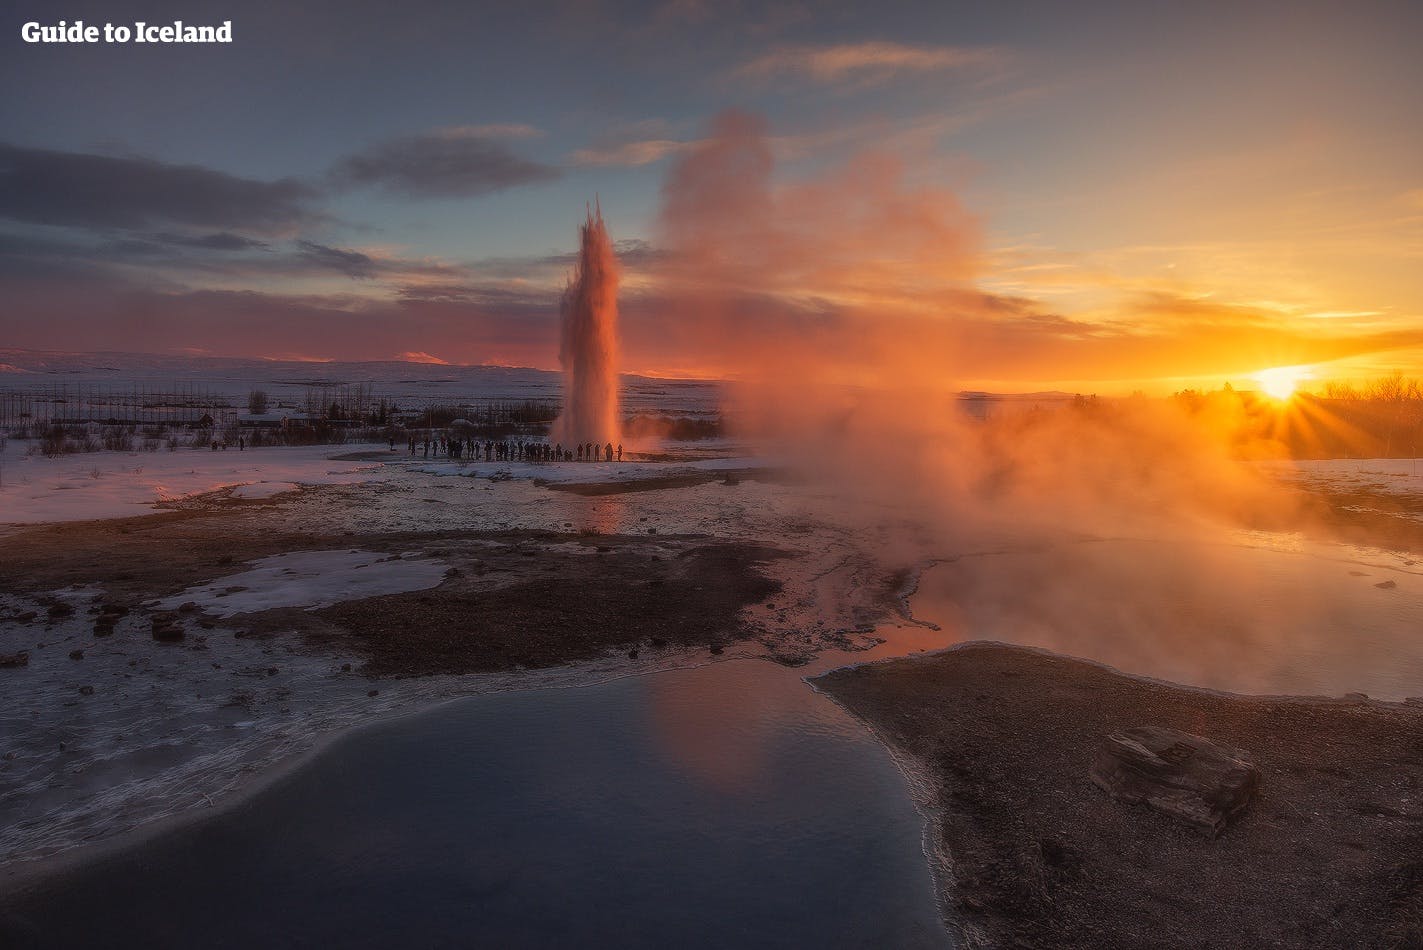 Effekterne i den konstante 'skumring', som de få solskinstimer i løbet af den islandske vinter giver, åbner op for at tage blændende fotos på steder som det geotermiske Geysir-område i Sydisland.